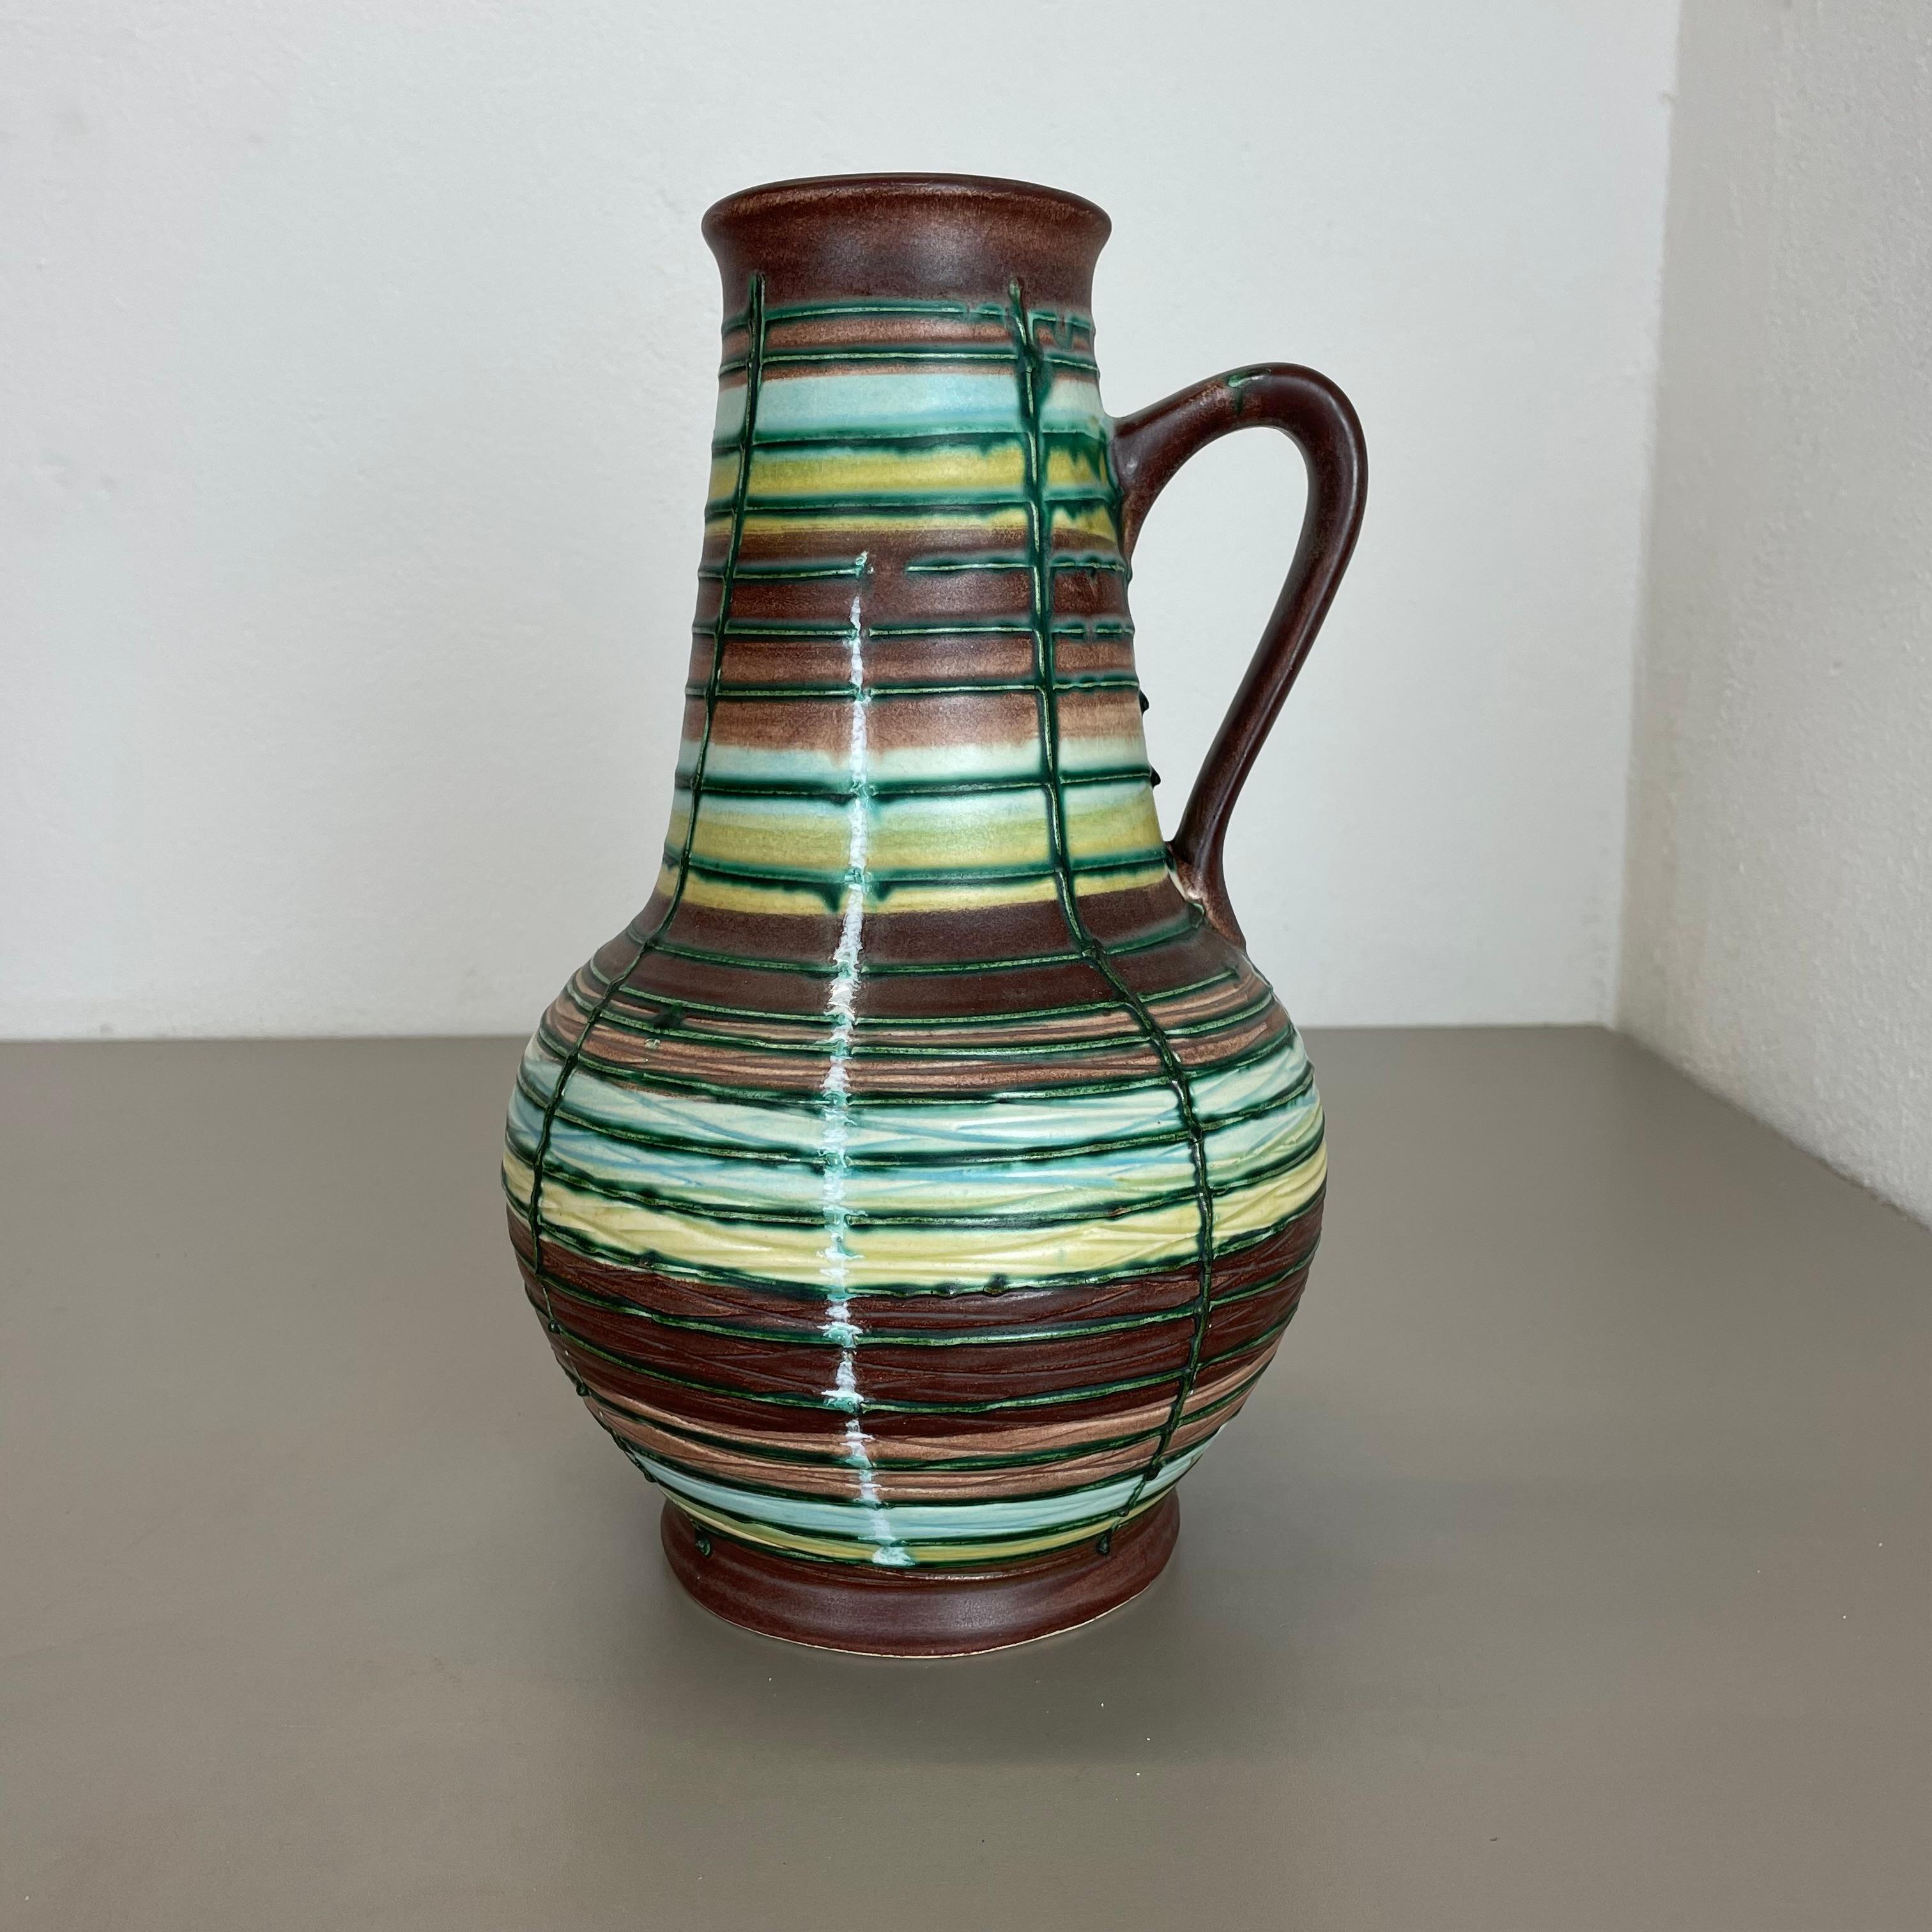 Artikel:

Vase aus Keramik


Produzent:

BAY Ceramic, Deutschland



Jahrzehnt:

1970s



Beschreibung:

Original Vintage Keramikvase aus den 1970er Jahren, hergestellt in Deutschland. Hochwertige deutsche Produktion mit einer schönen abstrakten